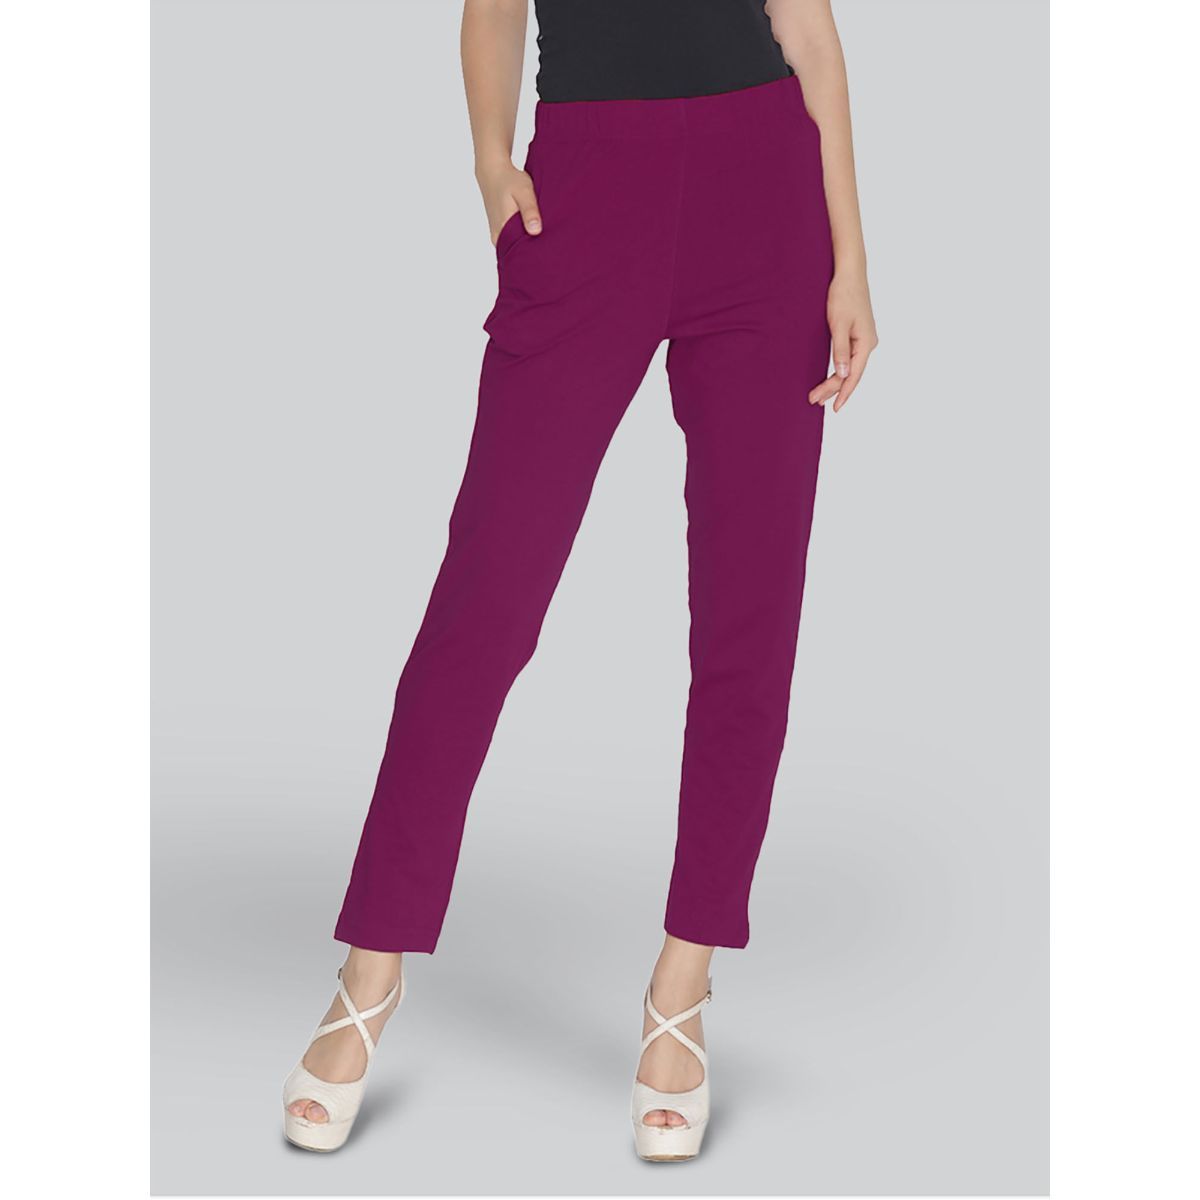 SAC Regular Fit Women Purple Trousers - Buy SAC Regular Fit Women Purple  Trousers Online at Best Prices in India | Flipkart.com